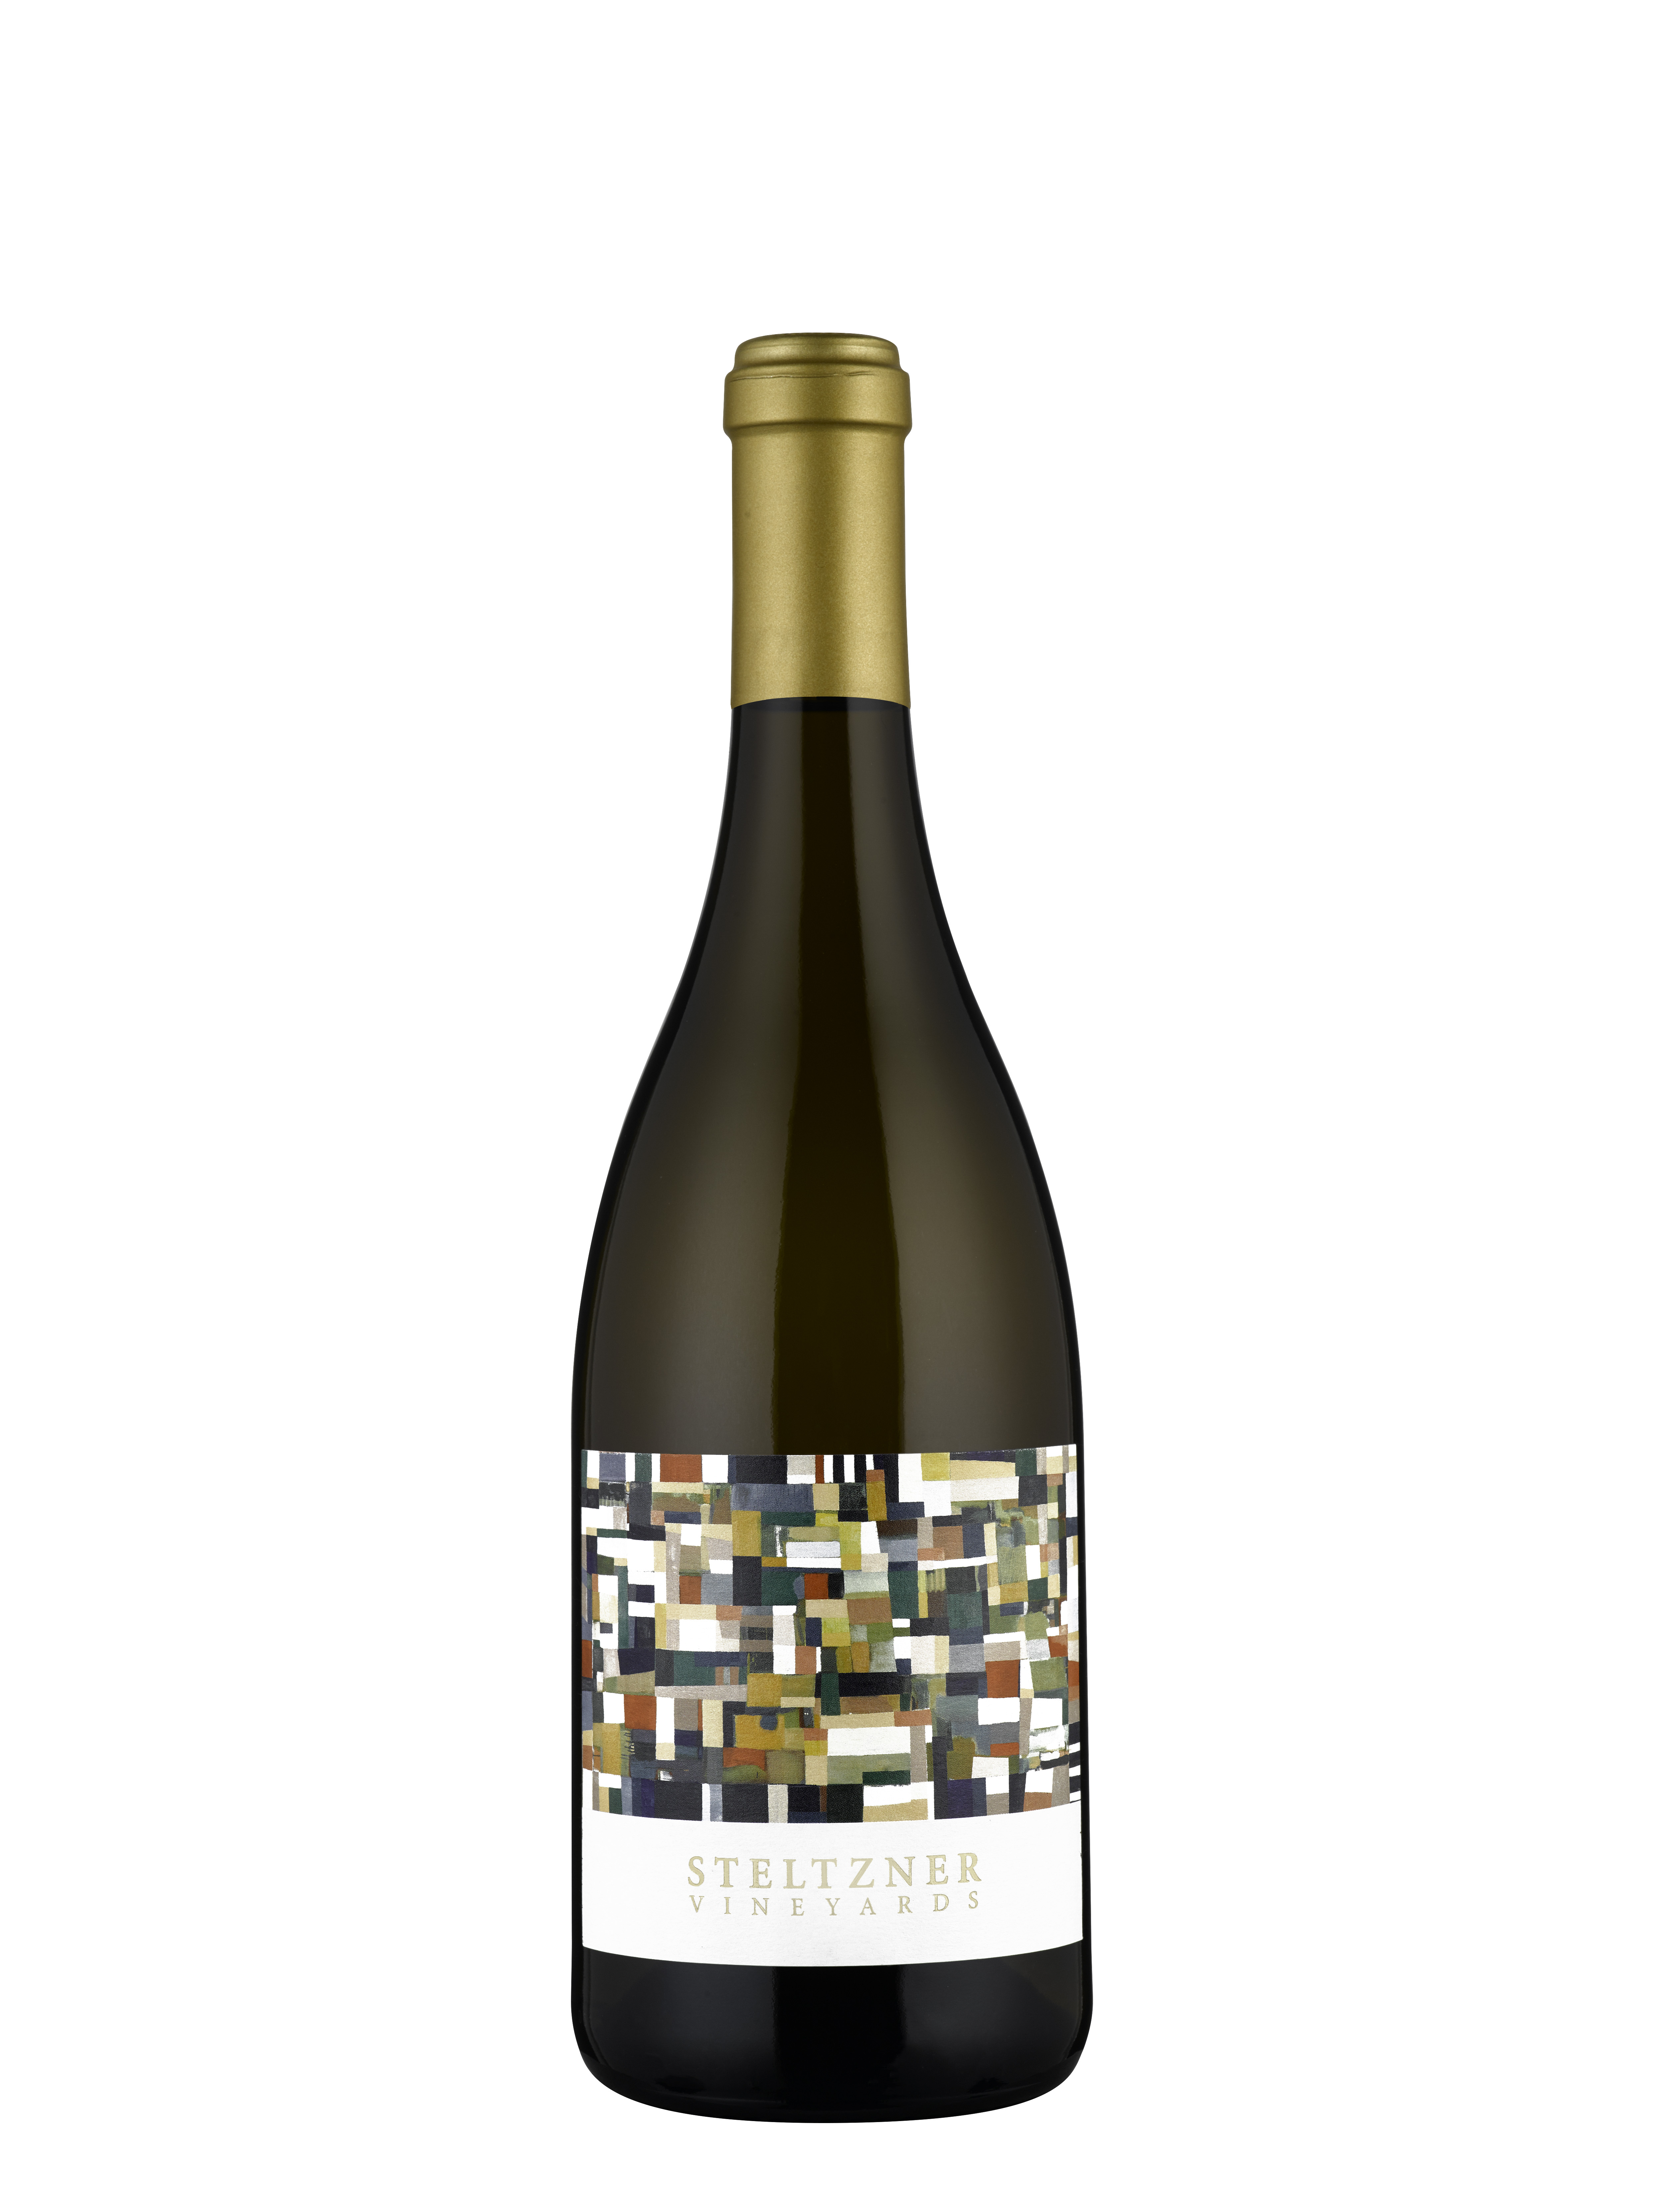 Product Image for 2021 Steltzner Vineyards Chardonnay, Sonoma Coast